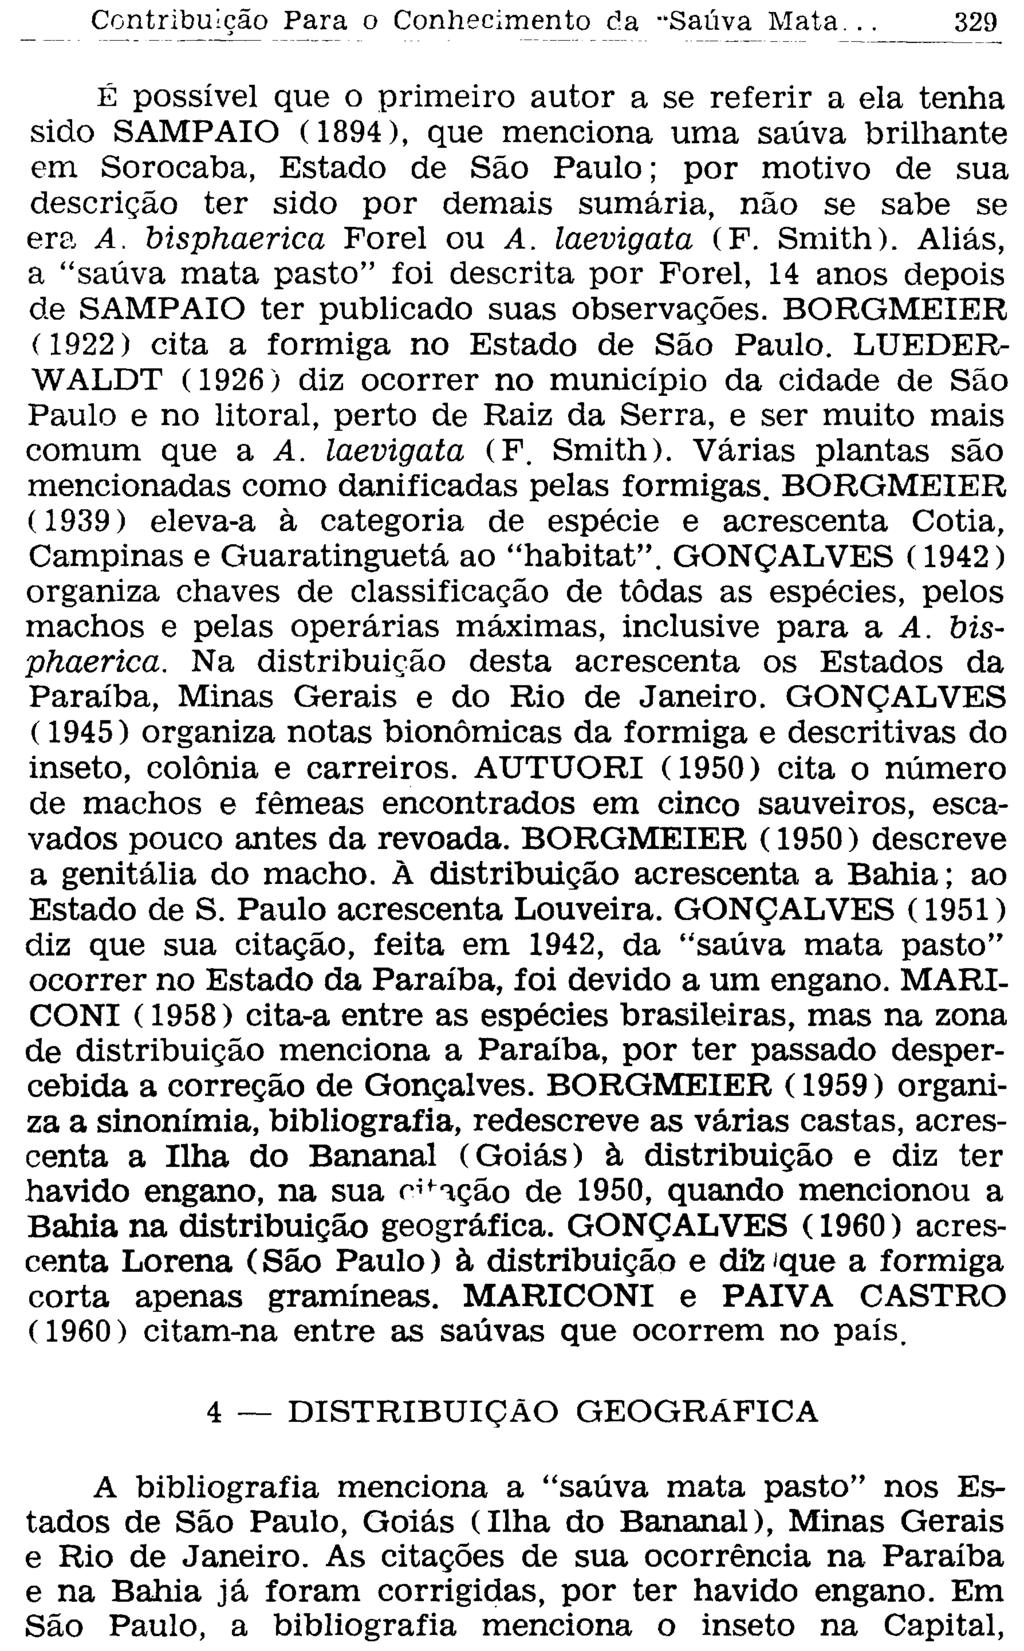 É possível que o primeiro autor a se referir a ela tenha sido SAMPAIO (1894), que menciona uma saúva brilhante em Sorocaba, Estado de São Paulo; por motivo de sua descrição ter sido por demais